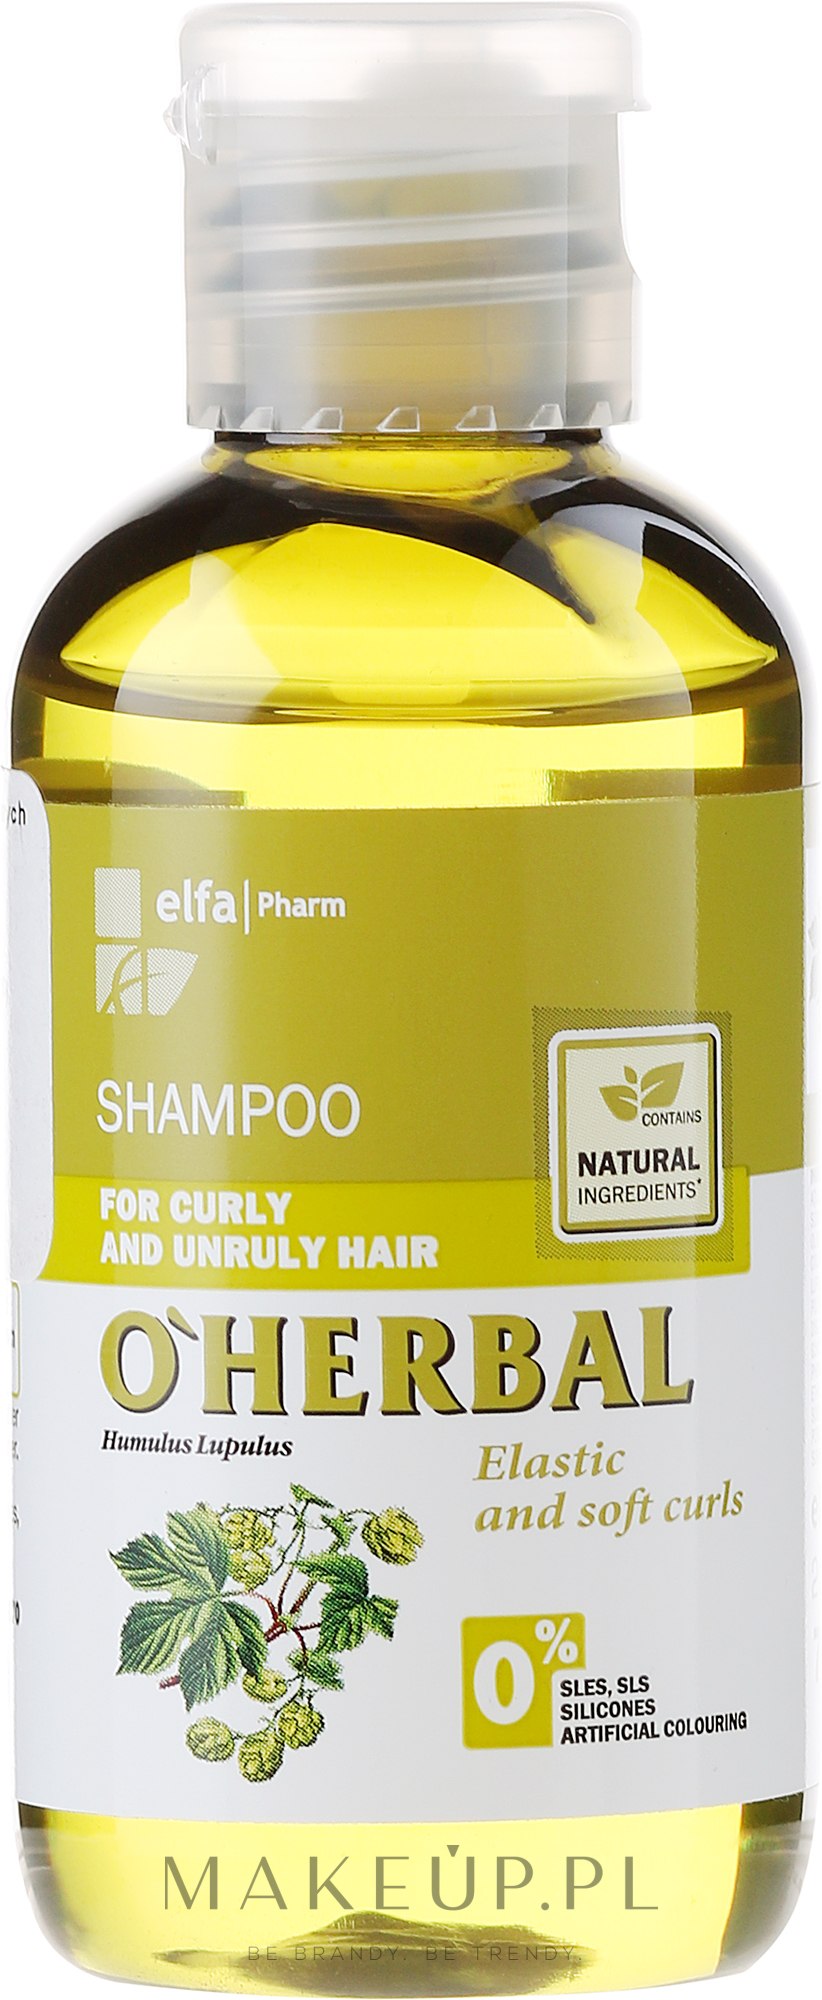 szampon do włosów kręconych o herbal